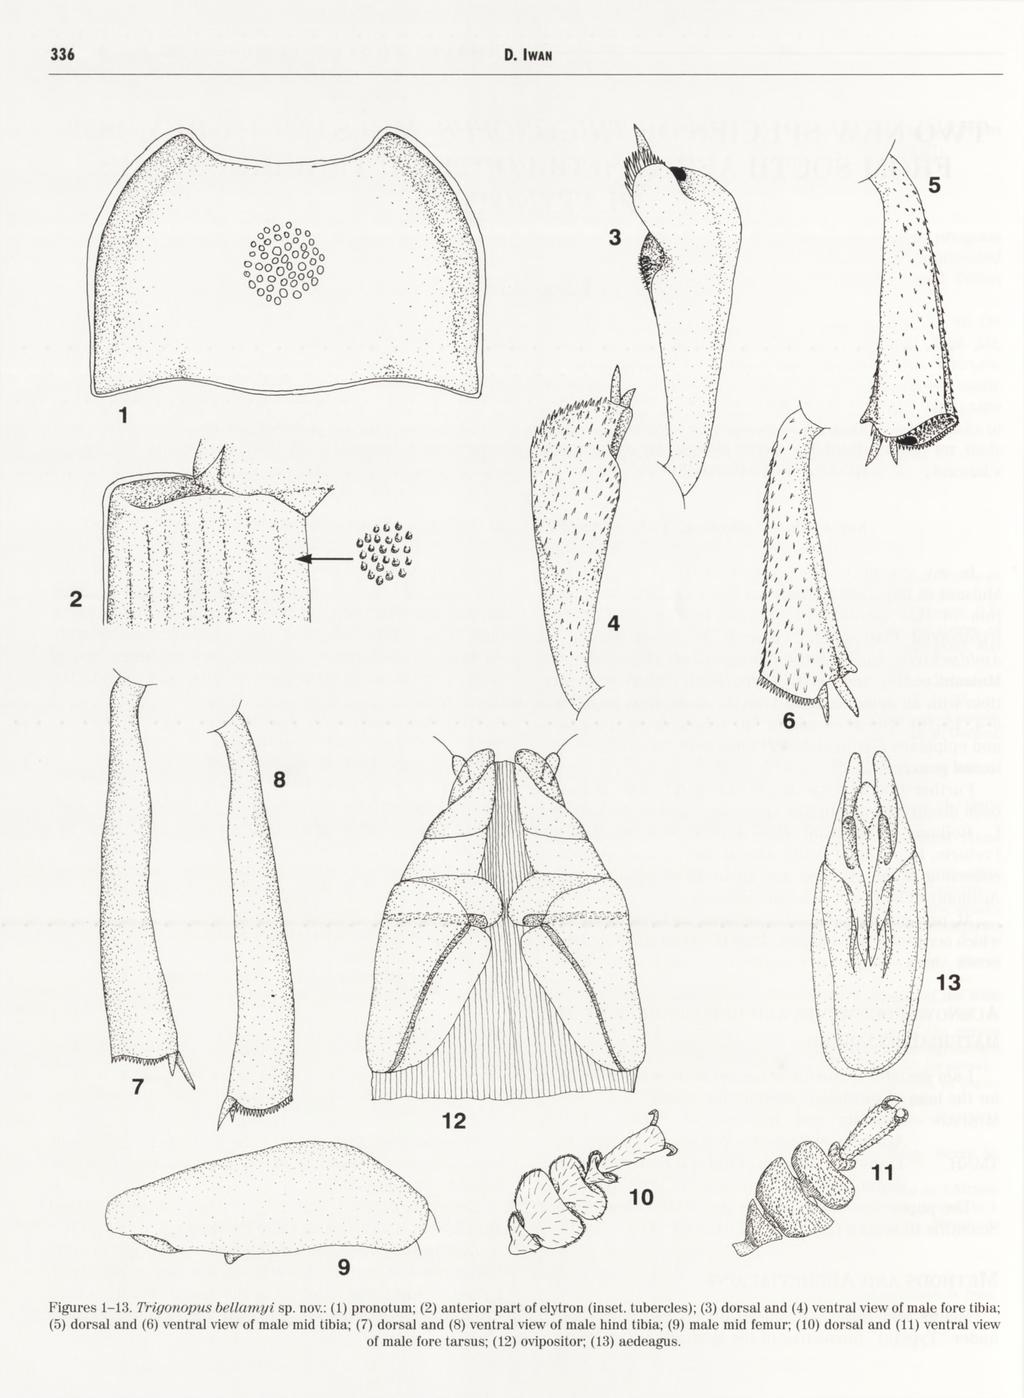 9 Figures 1-13. Trigoiiopiis bellamyi sp. nov.